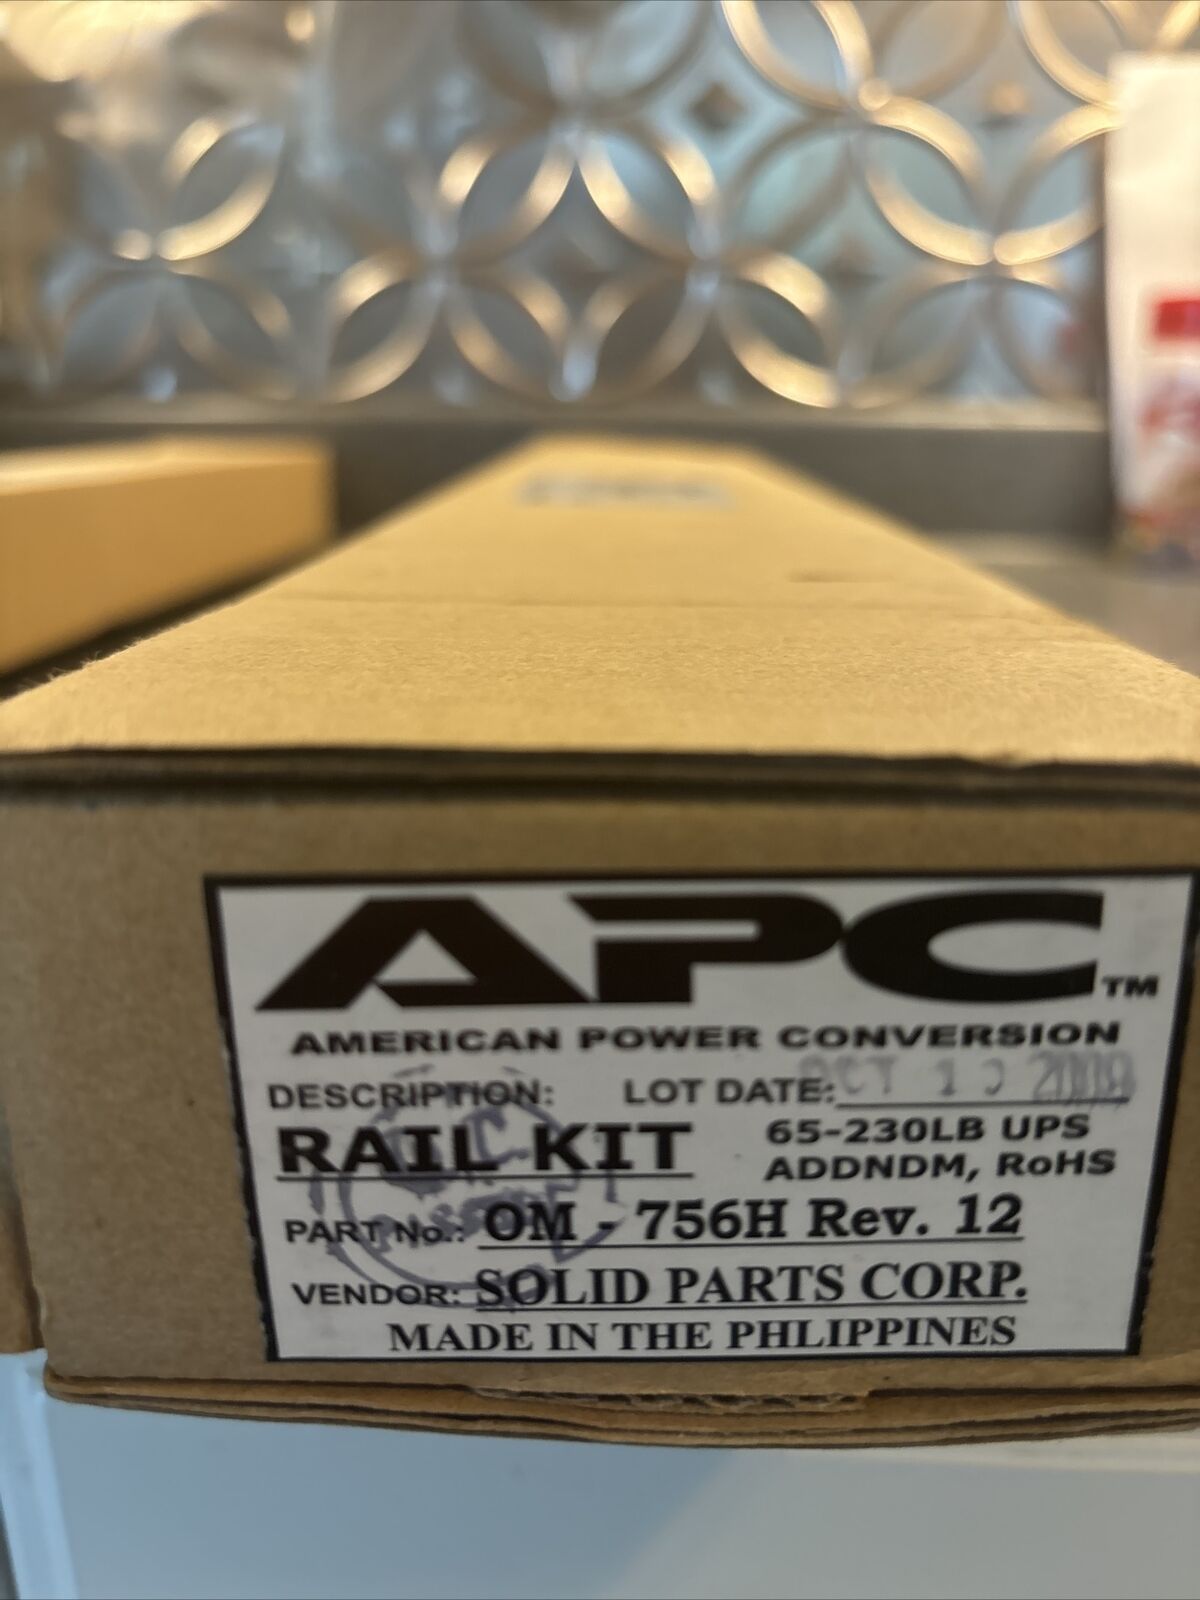 APC OM-756H Rev 12 Sliding Rail Kit 